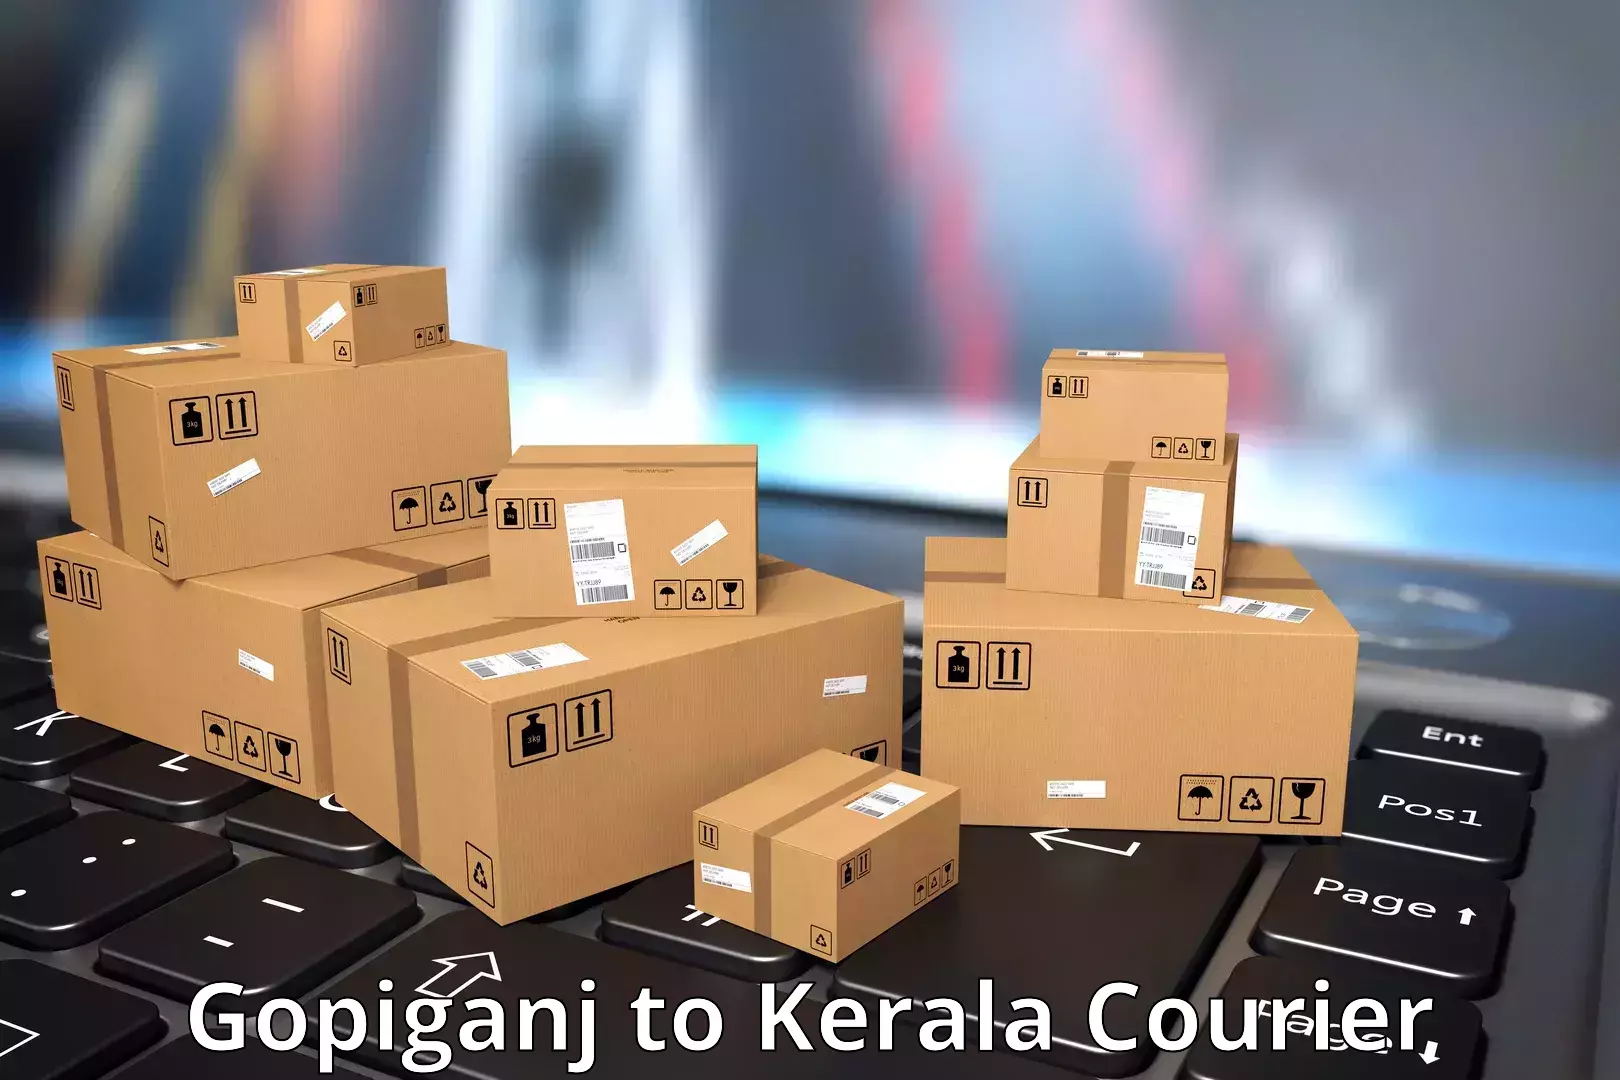 Premium courier solutions Gopiganj to Poojapura